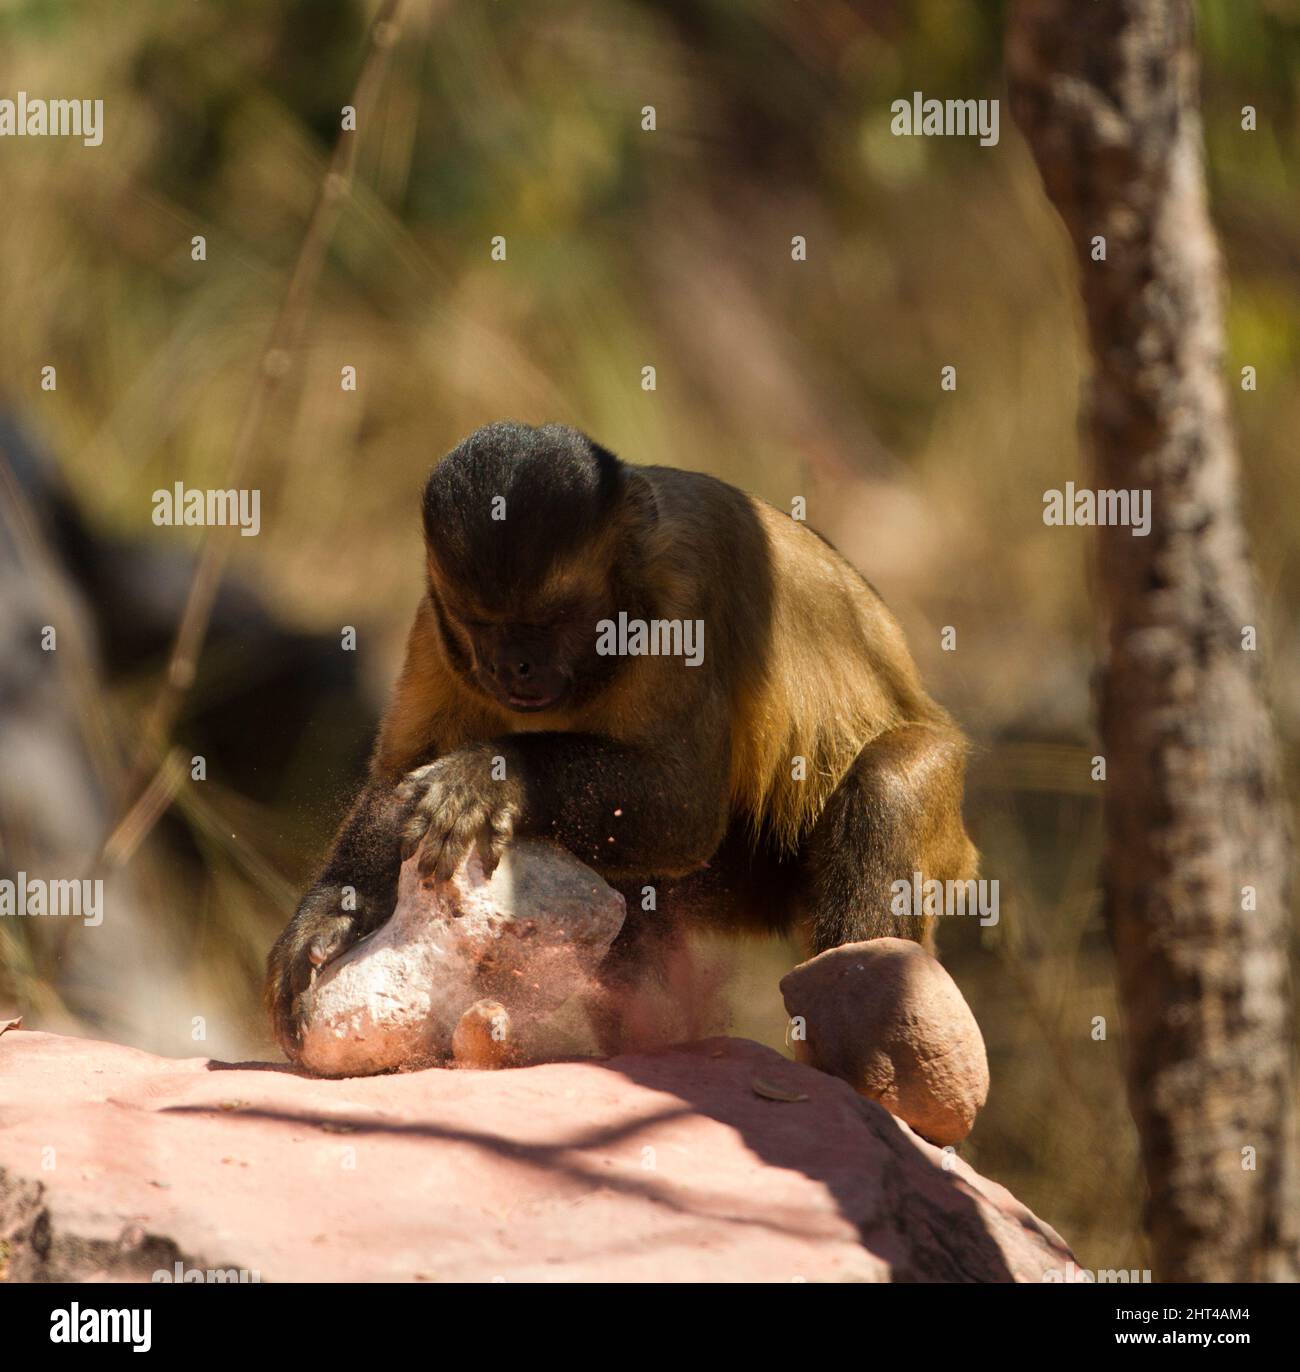 Kapuziner (Sapajus apella) anbraten, mit einem Stein als Werkzeug, um Nüsse aufzubrechen. Pantanal, Mato Grosso, Brasilien Stockfoto